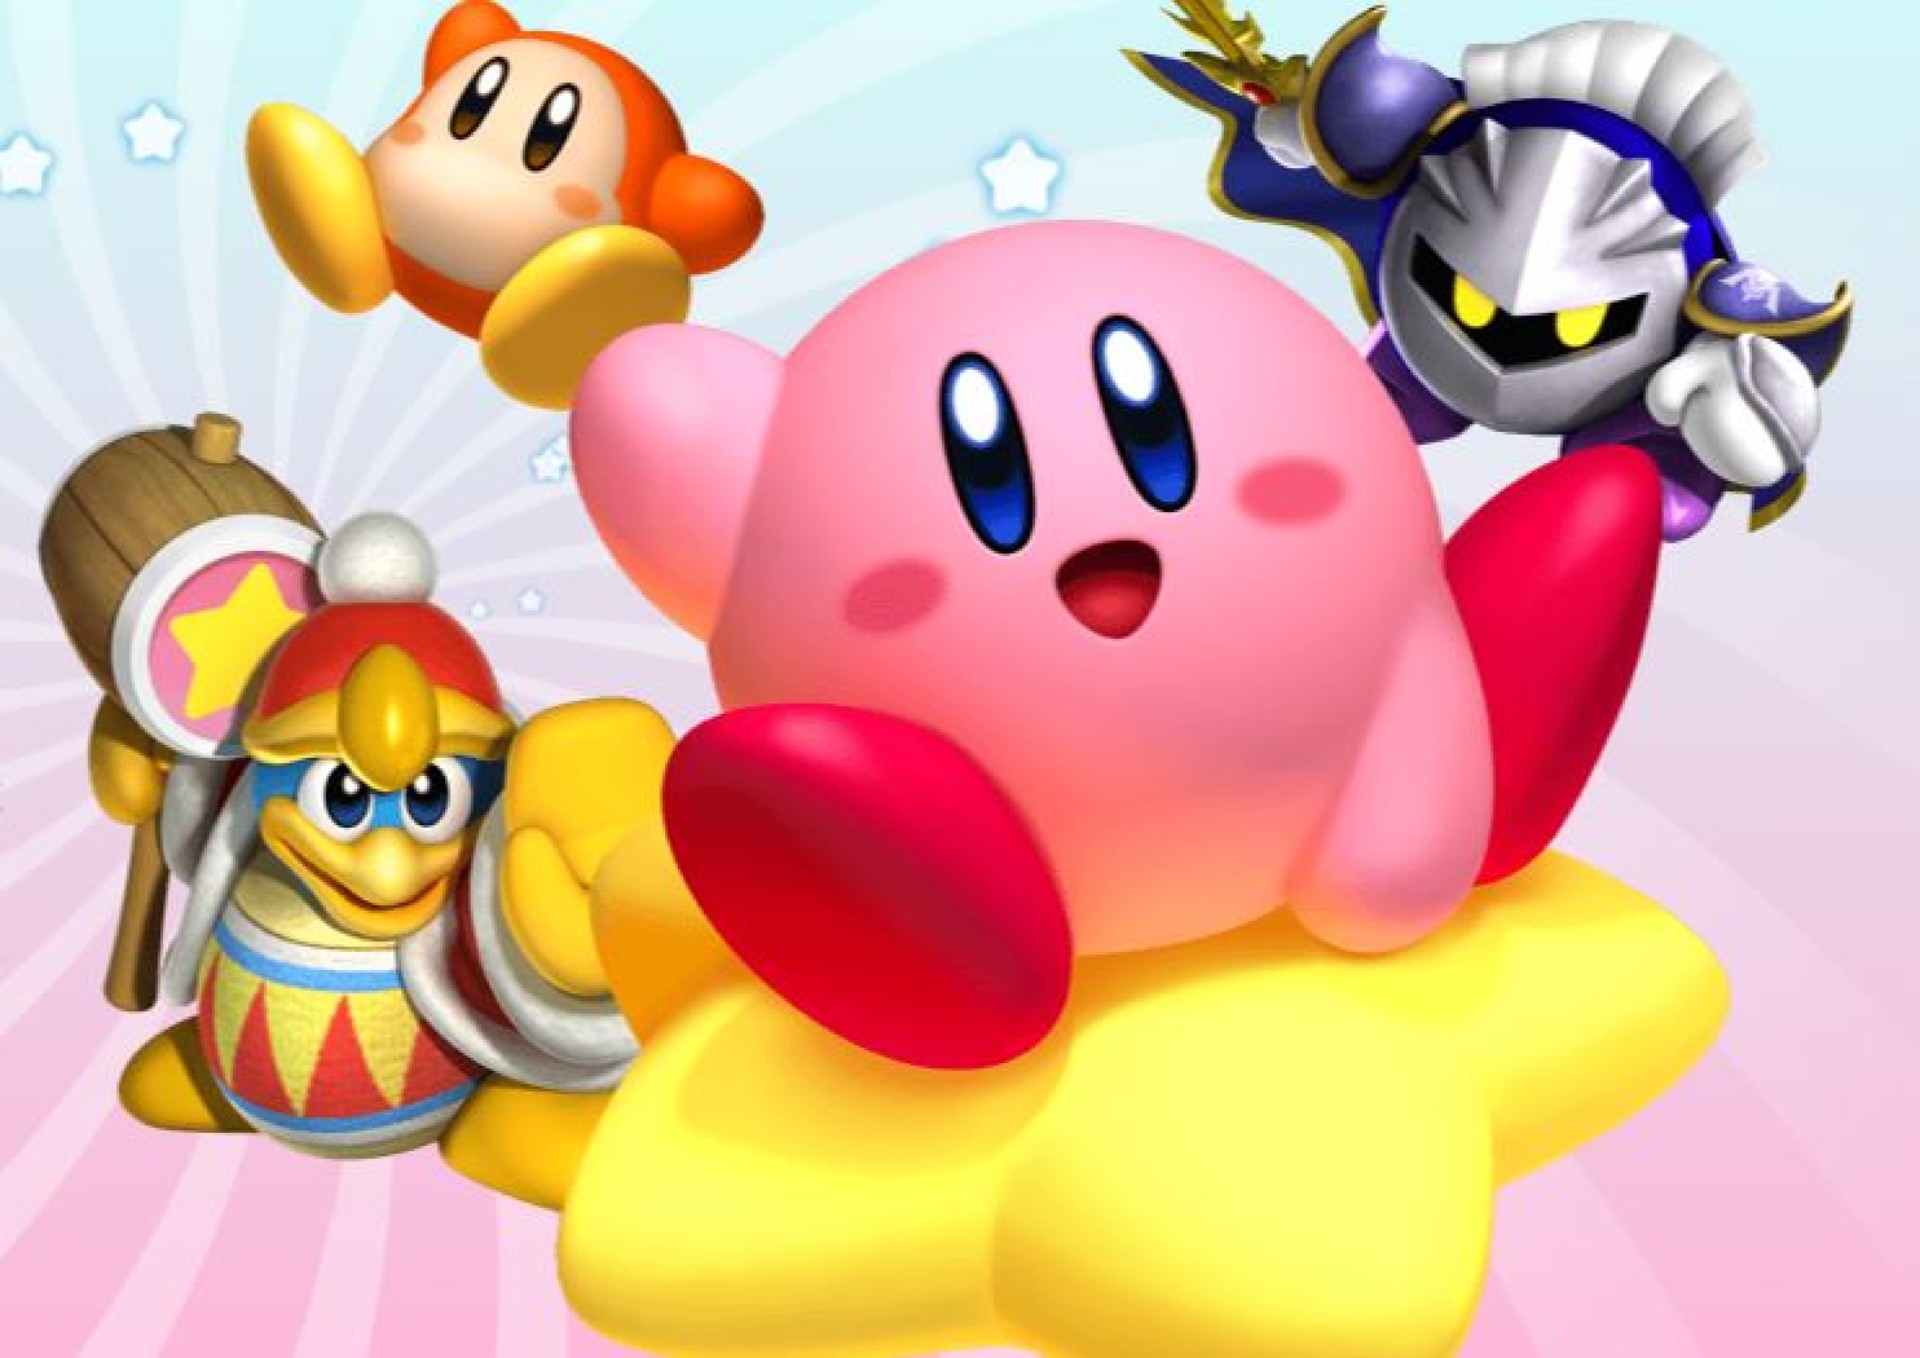 ผู้ให้กำเนิด Kirby เปิดเผยเบื้องหลังการออกแบบและความลับใน Kirby’s Dream Land